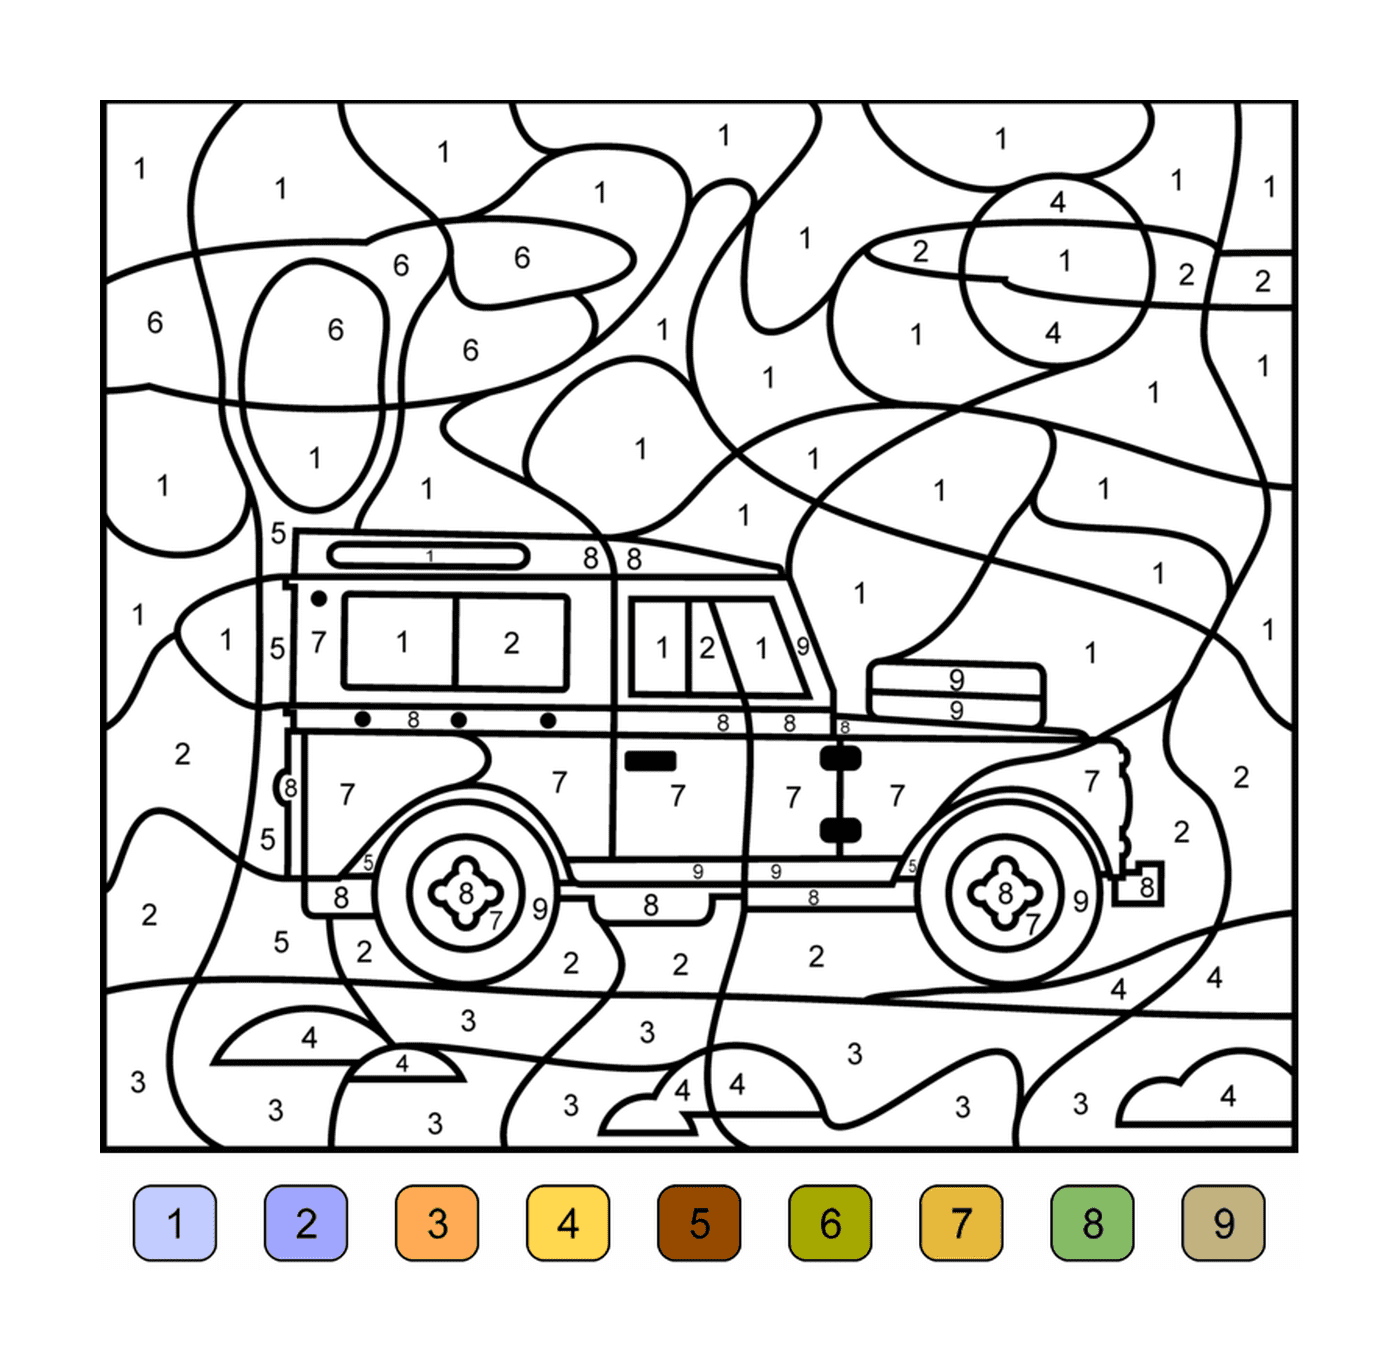  संख्या द्वारा रंगीनिंग में एक ट्रक 